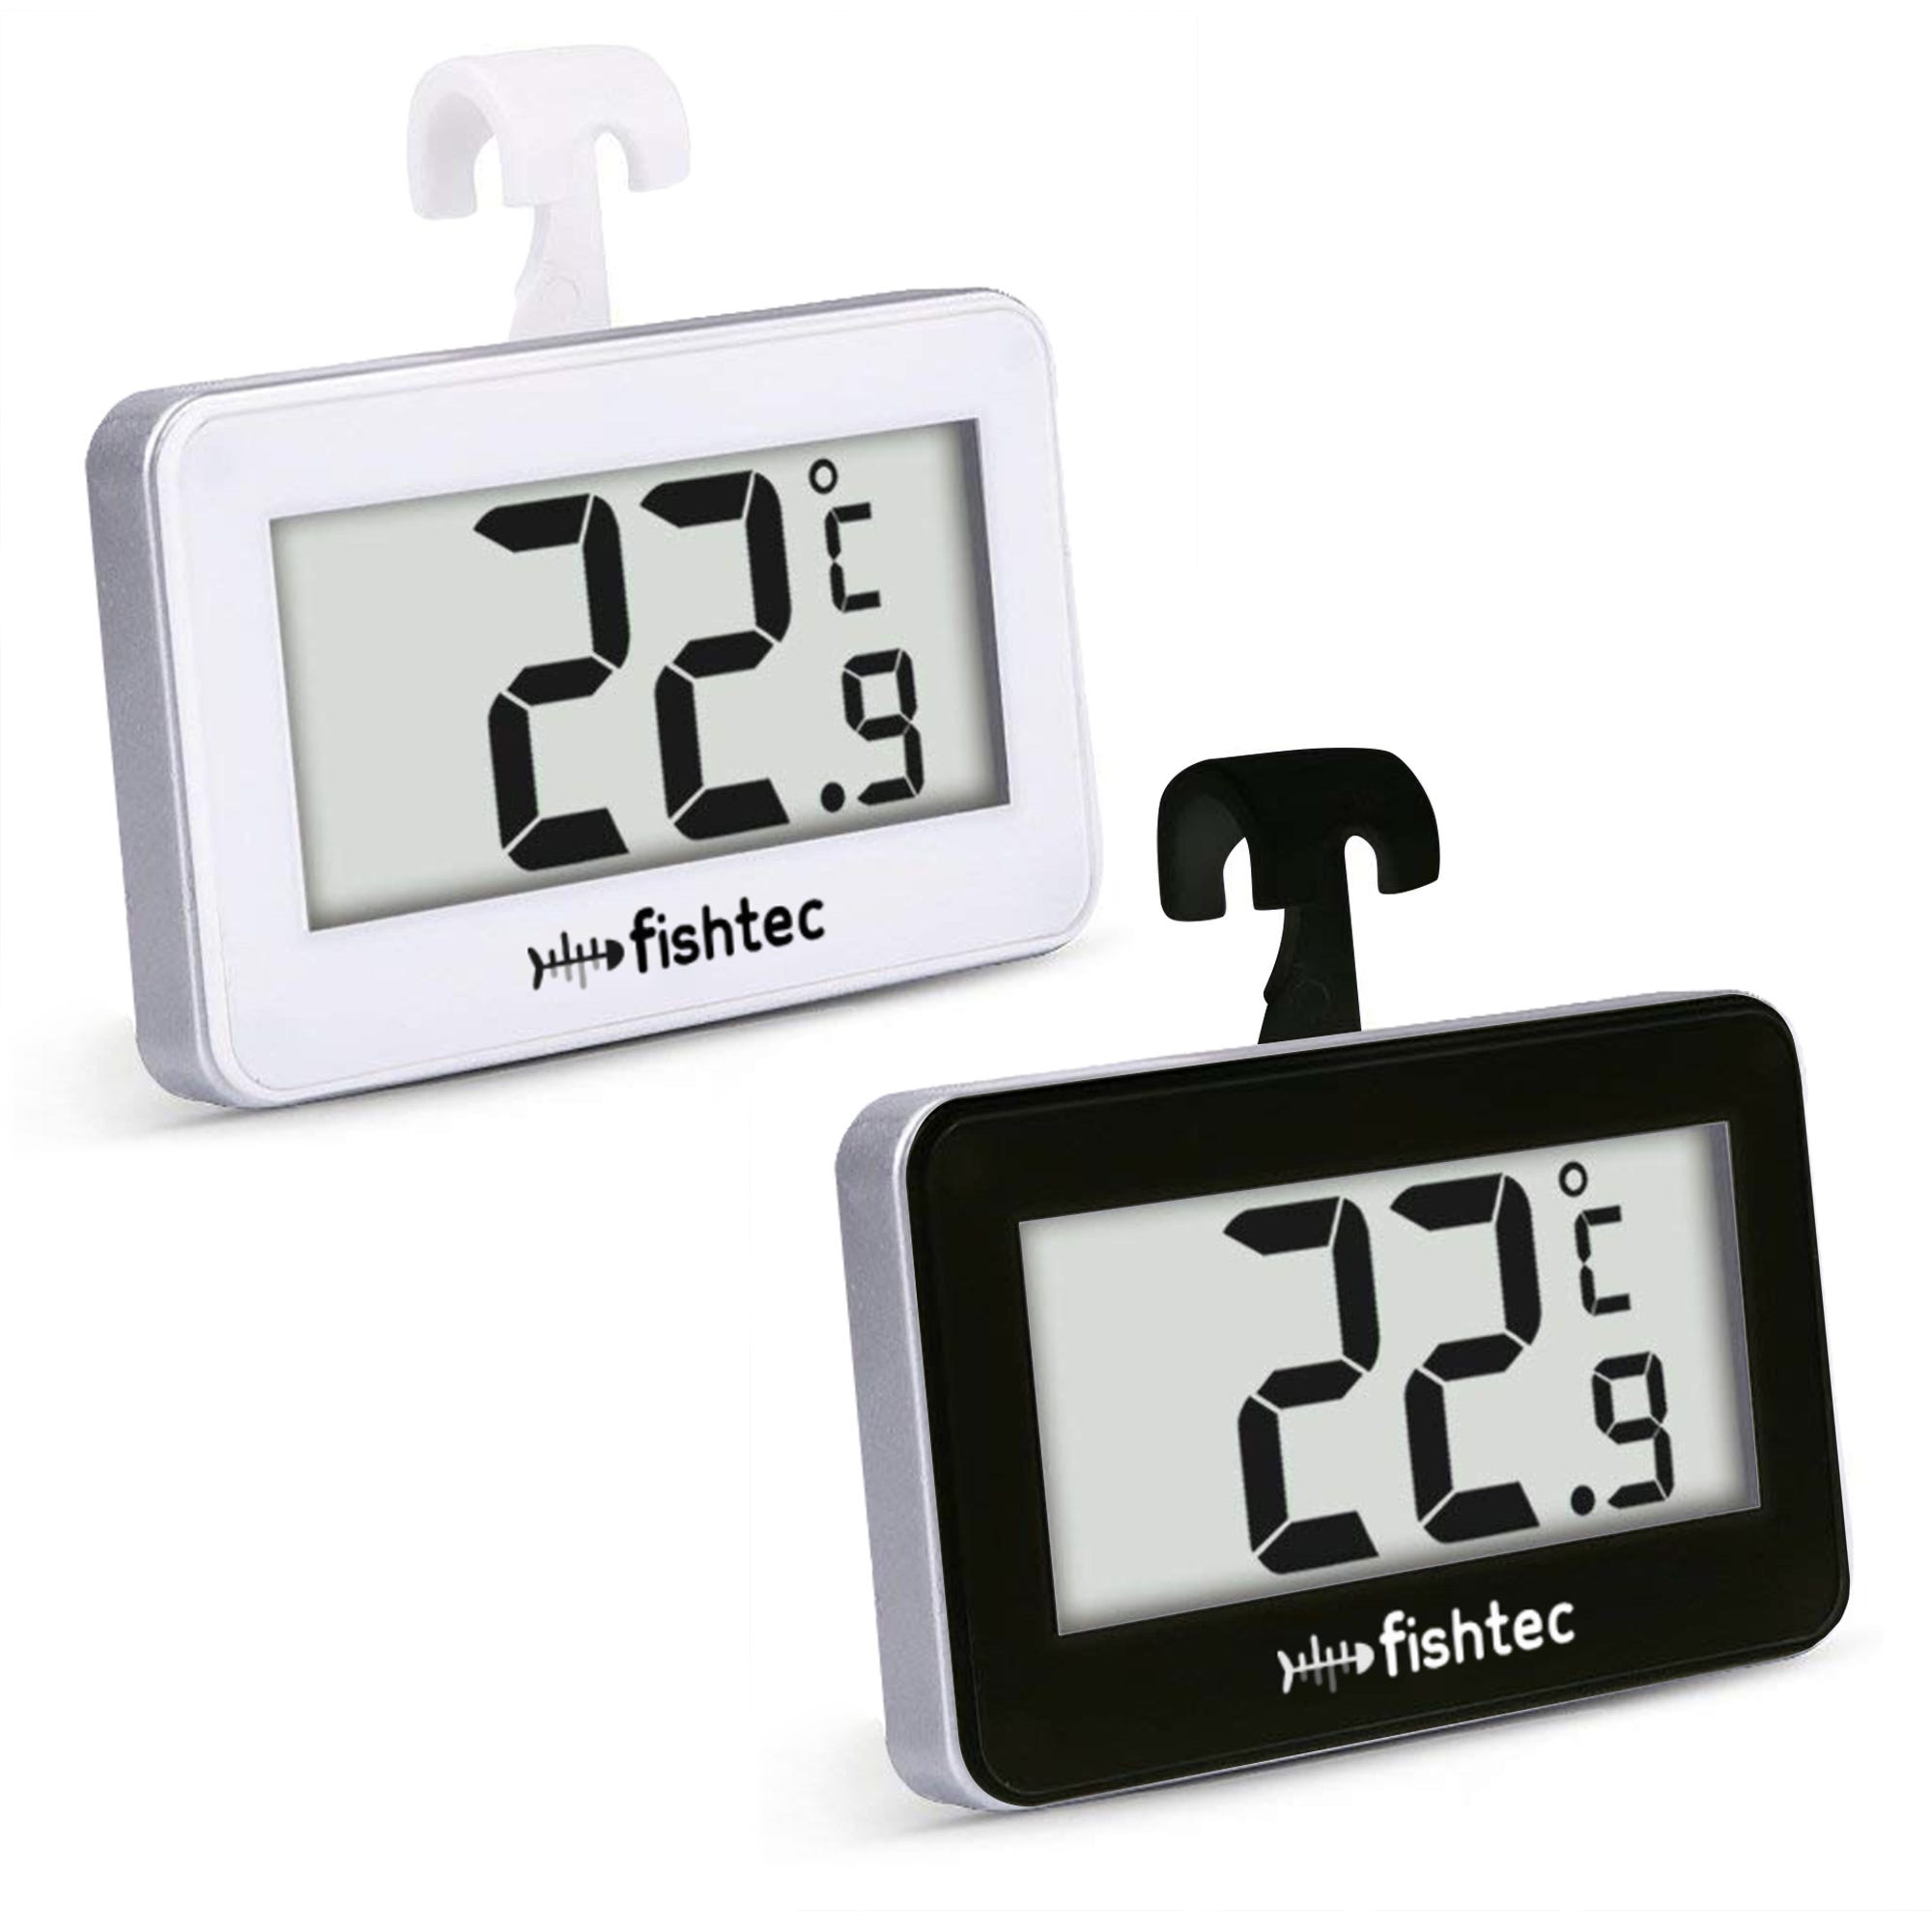 FISHTEC Thermometre Refrigerateur Electronique - Lot de 2 - Sonde integree  - 3 systemes d'accroche : crochet, support, magnetique - Noir & Blanc